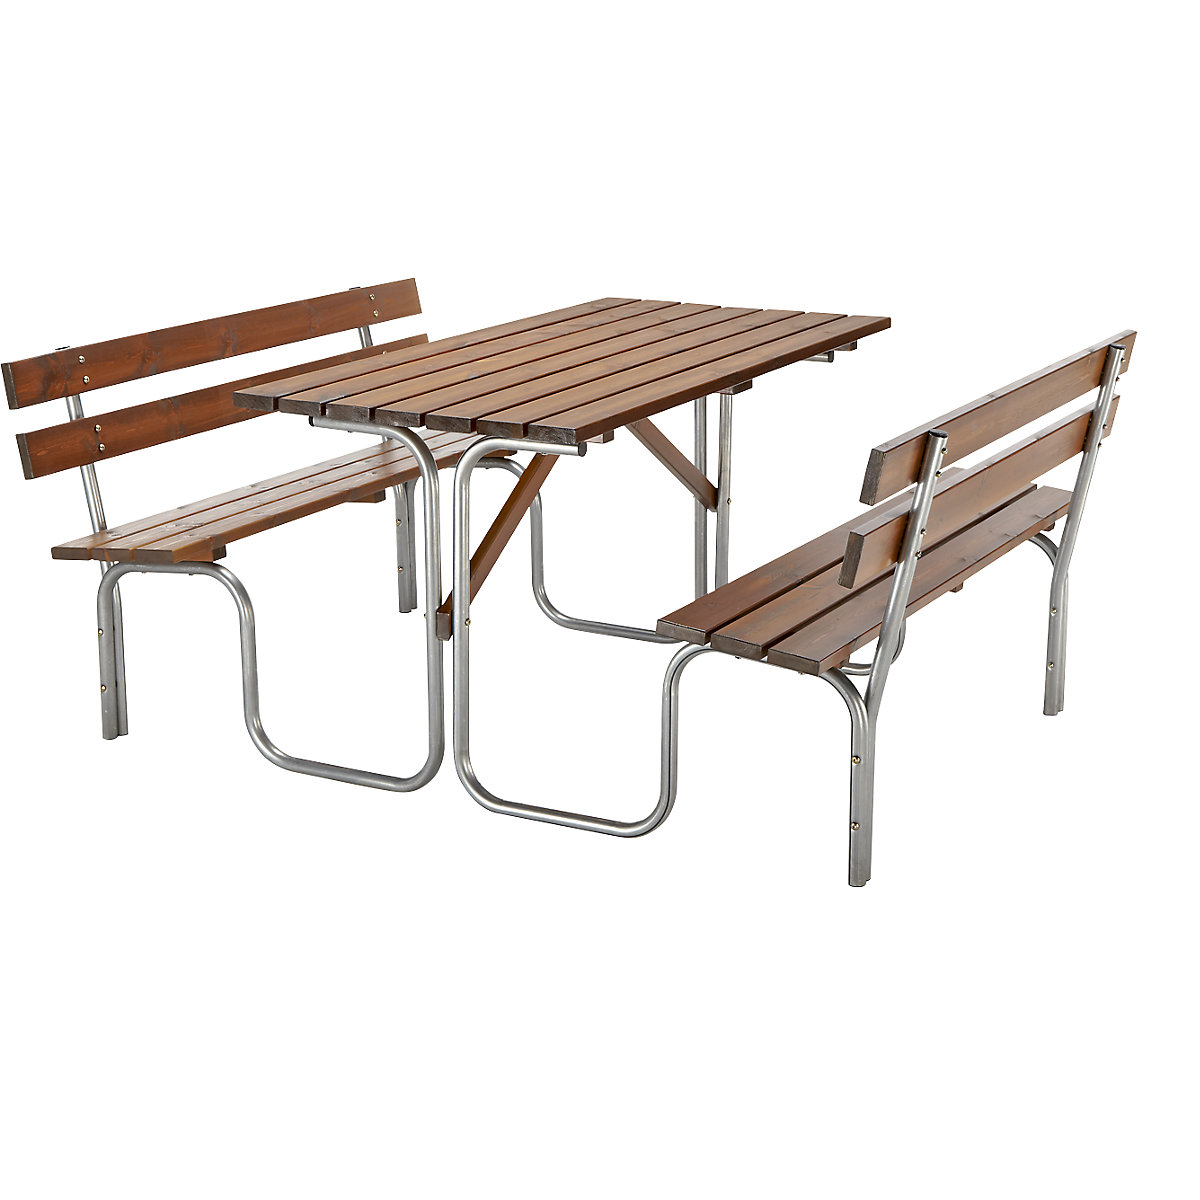 Zestaw do siedzenia, stół i 2 ławki, dł. x szer. całk 1500 x 1850 mm